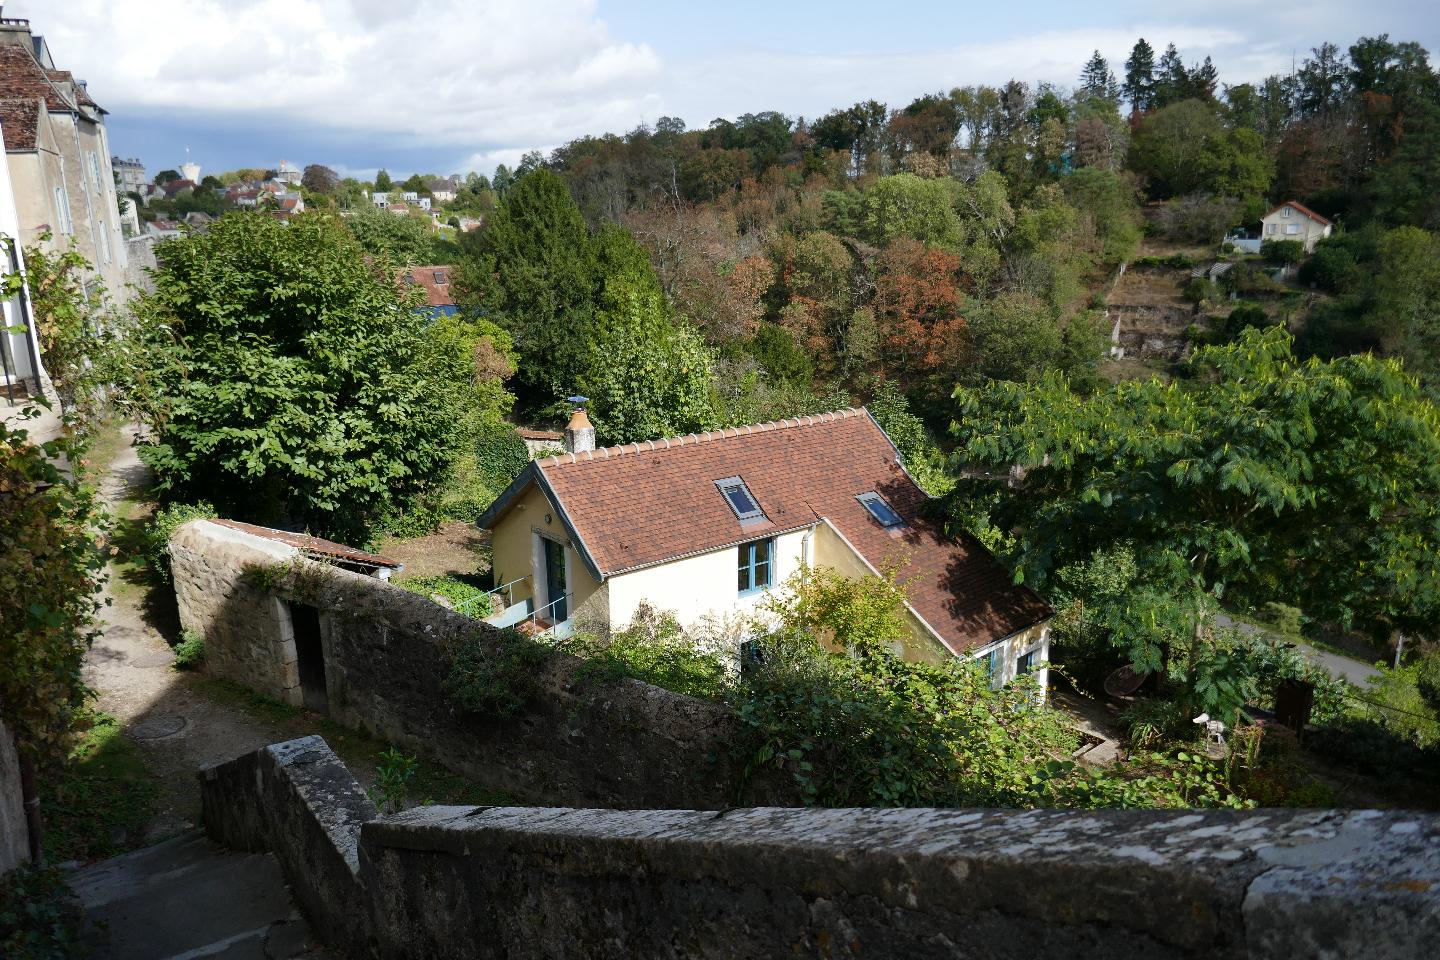 Hôte GreenGo: Sublime vue sur les jardins d'Avallon